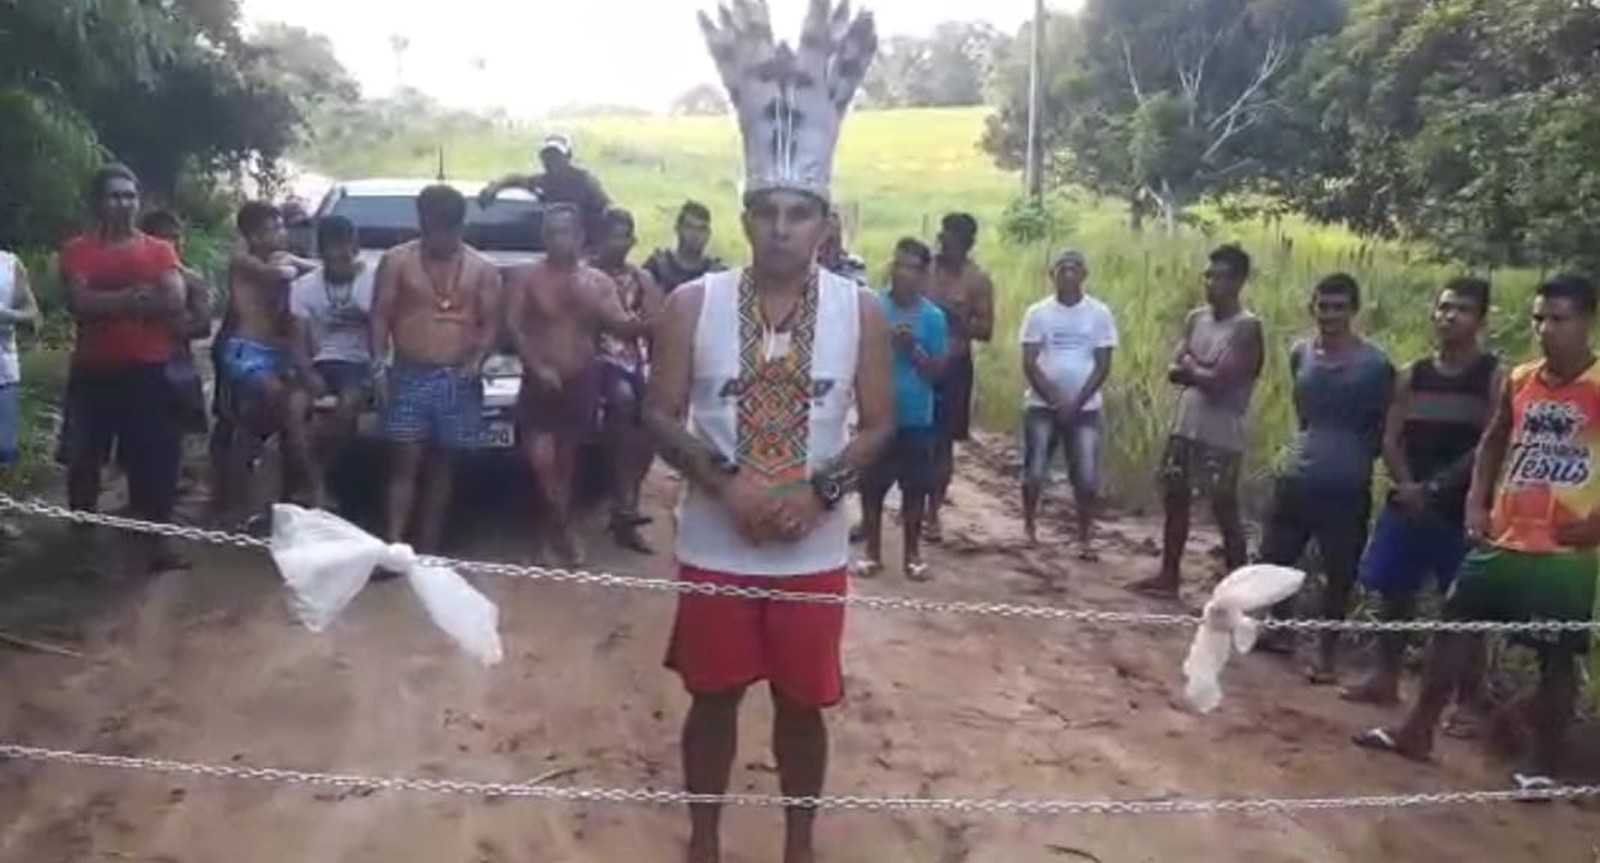 Em vídeo gravado para a Rede Amazônica no Acre, índios falam que as correntes são para impedir entrada e saída de pessoas da aldeia (FOTO REPRODUÇÃO)